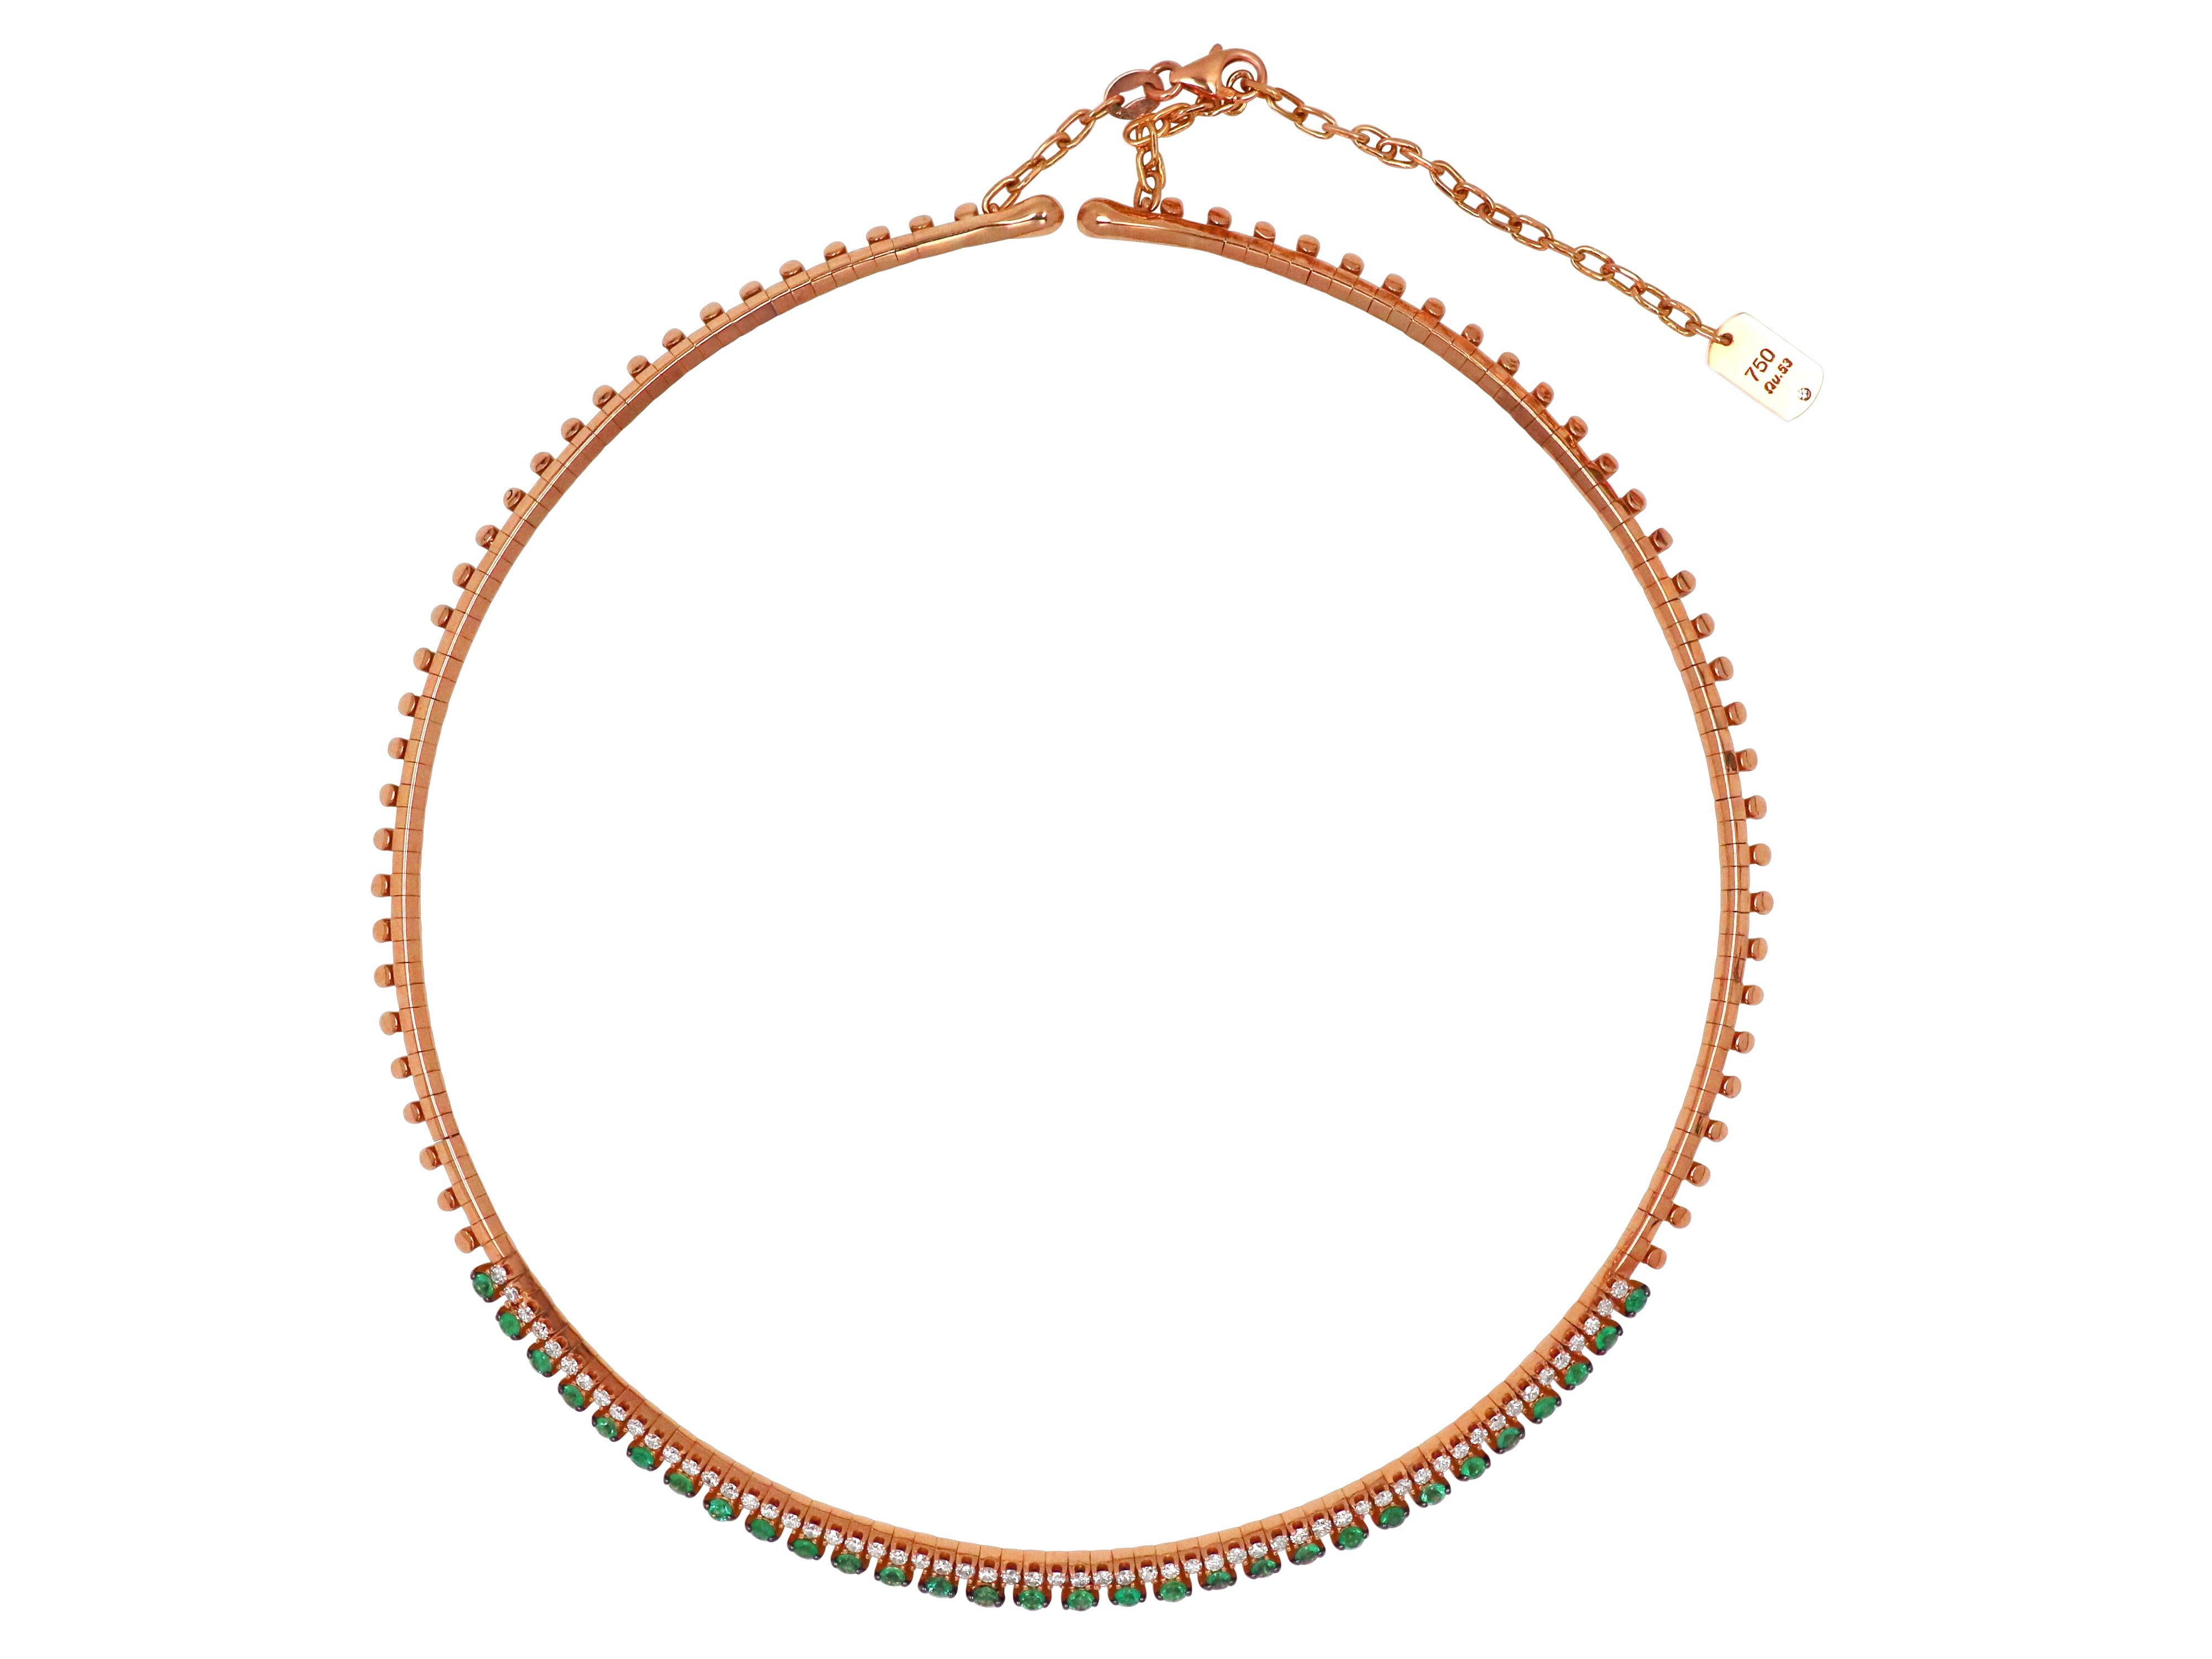 Halskette aus 18 Karat Roségold mit 0,81 Karat Smaragden und 0,66 Karat Diamanten mit Brillantschliff. Die Länge ist mit zusätzlichen Gliedern einstellbar.

Max. Länge: 14.960